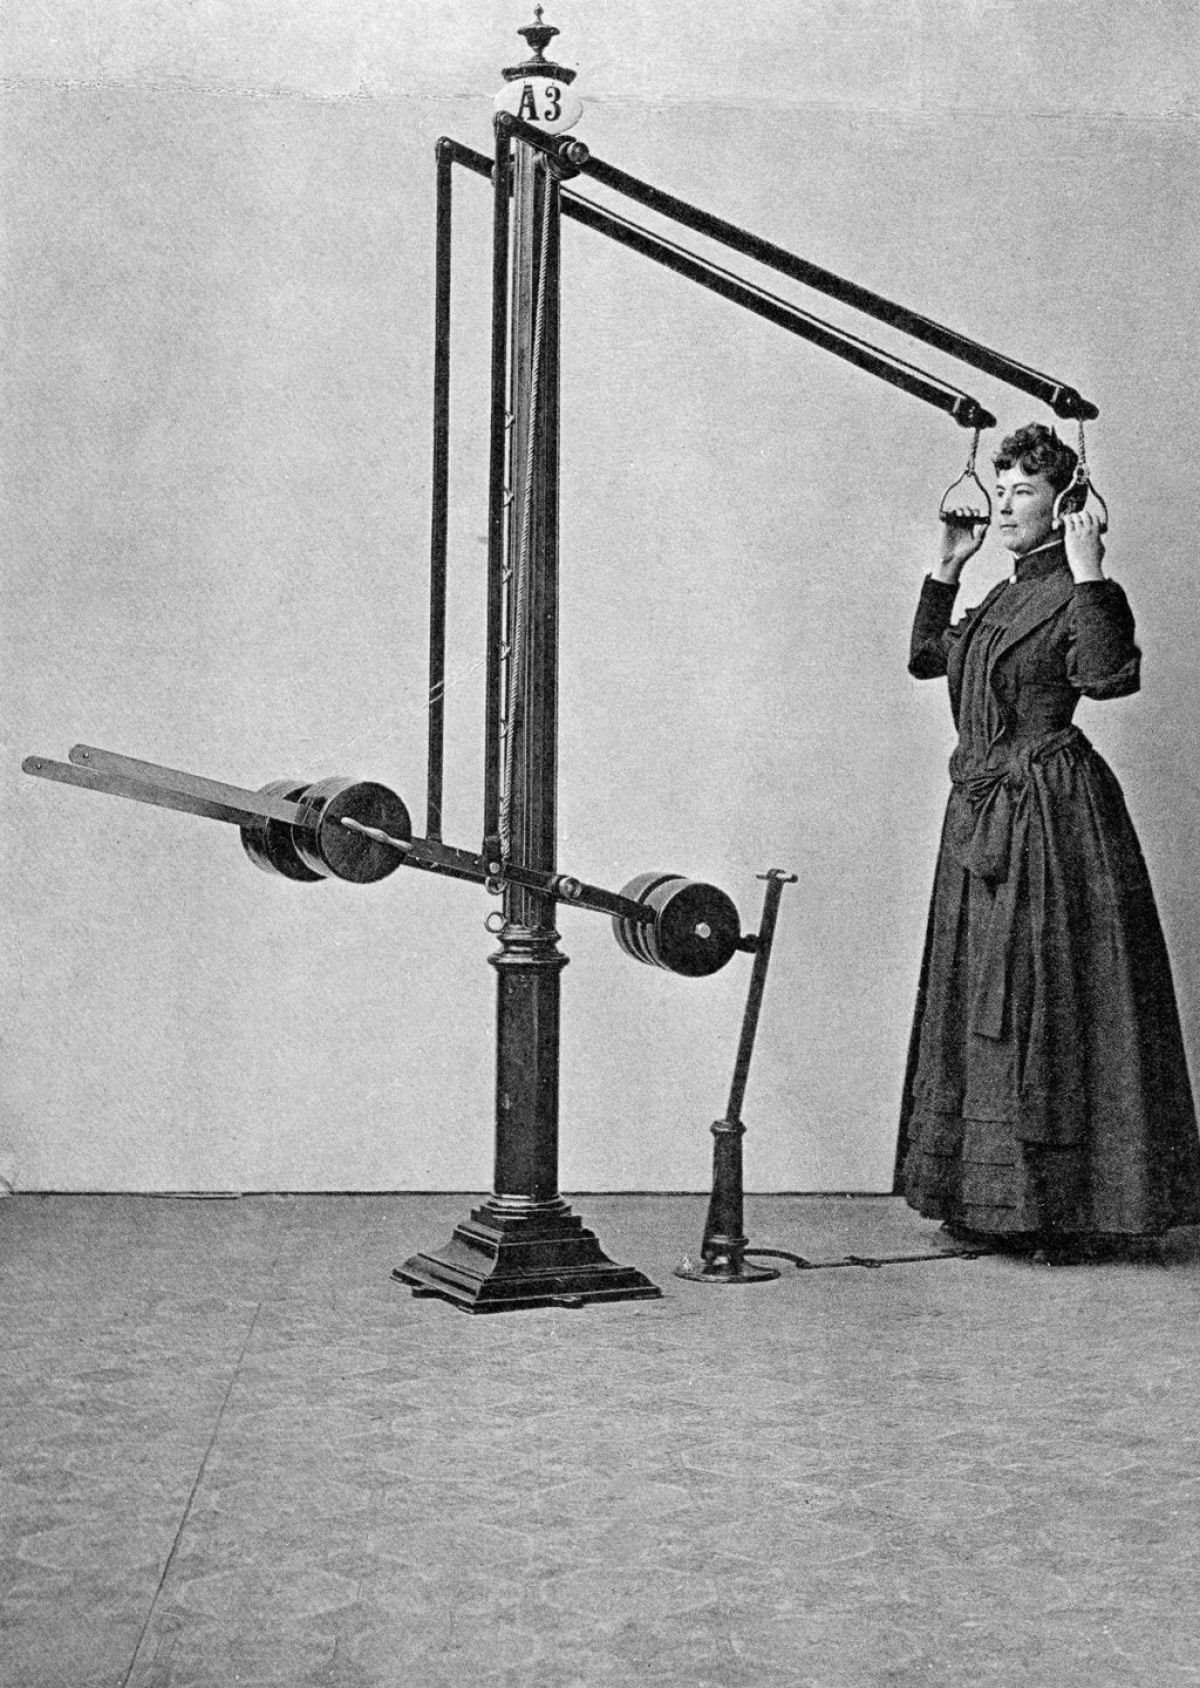 Suor e corset. Academia mecânica no século XIX 18